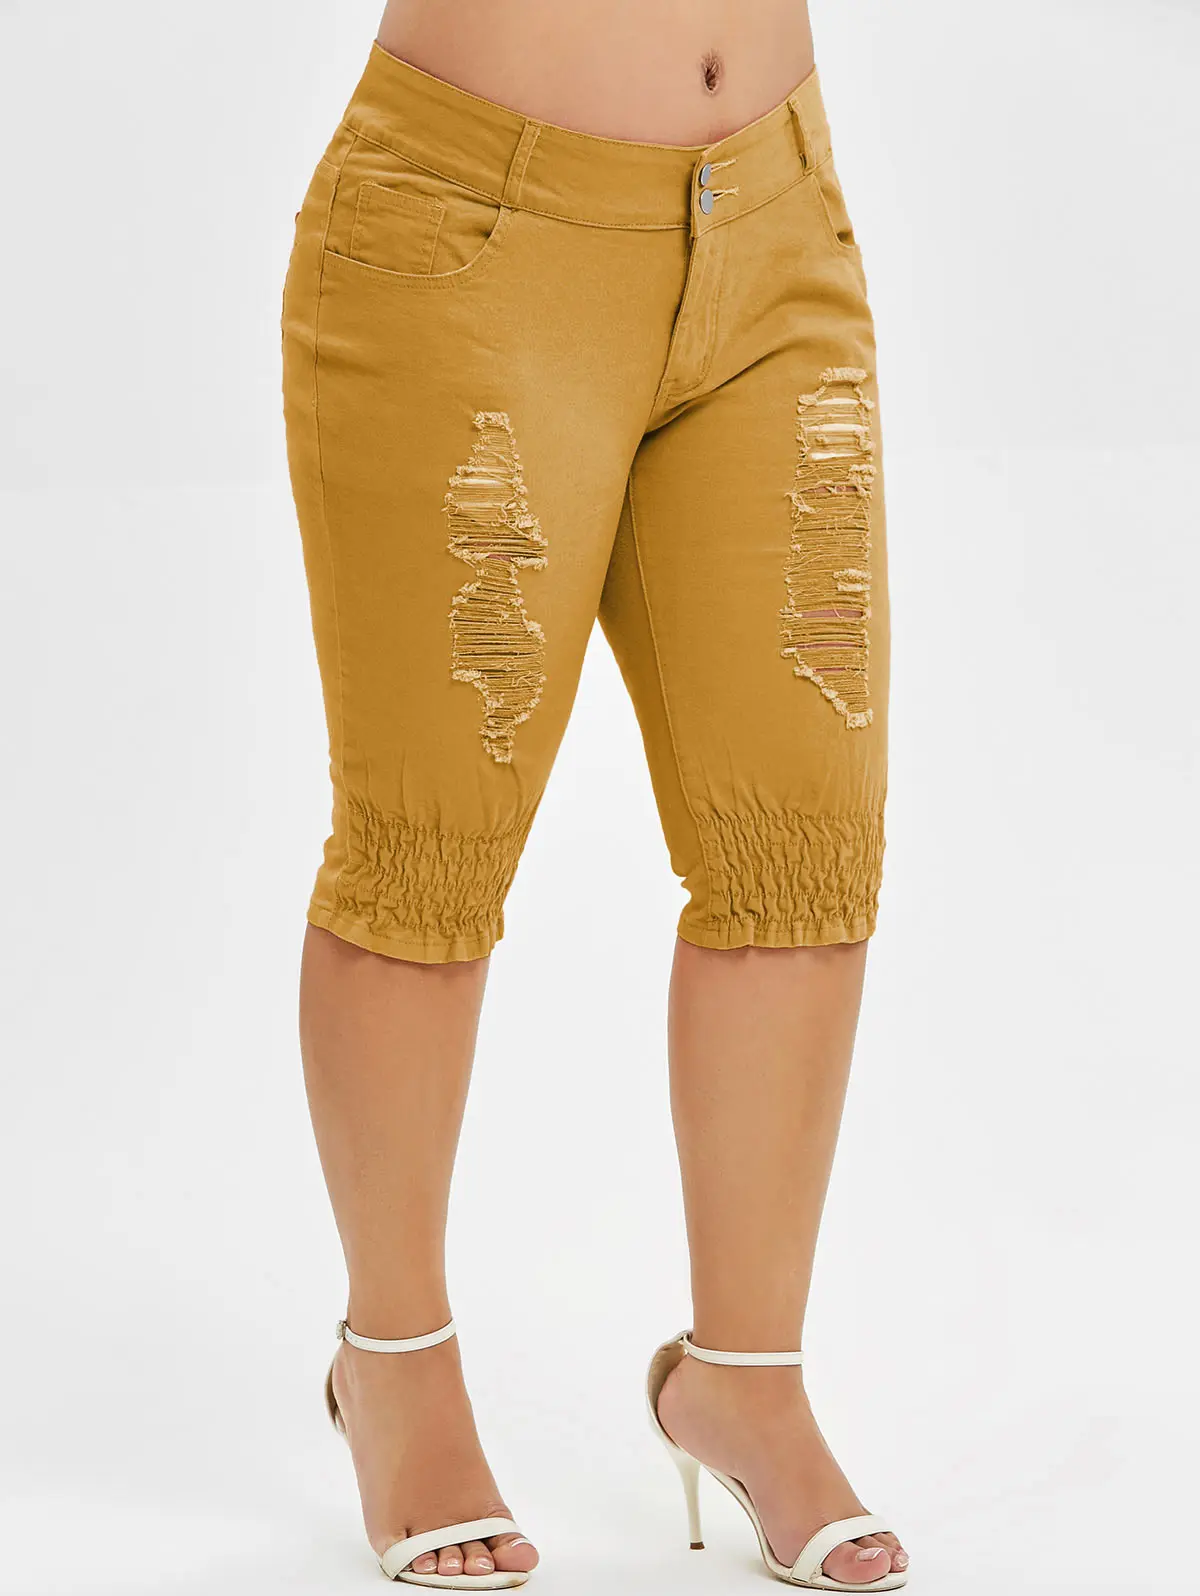 Wipalo/Большие размеры, рваные на коленках, длина джинсов, молния, прямые брюки со средней талией, обтягивающие джинсы, женская летняя подошва